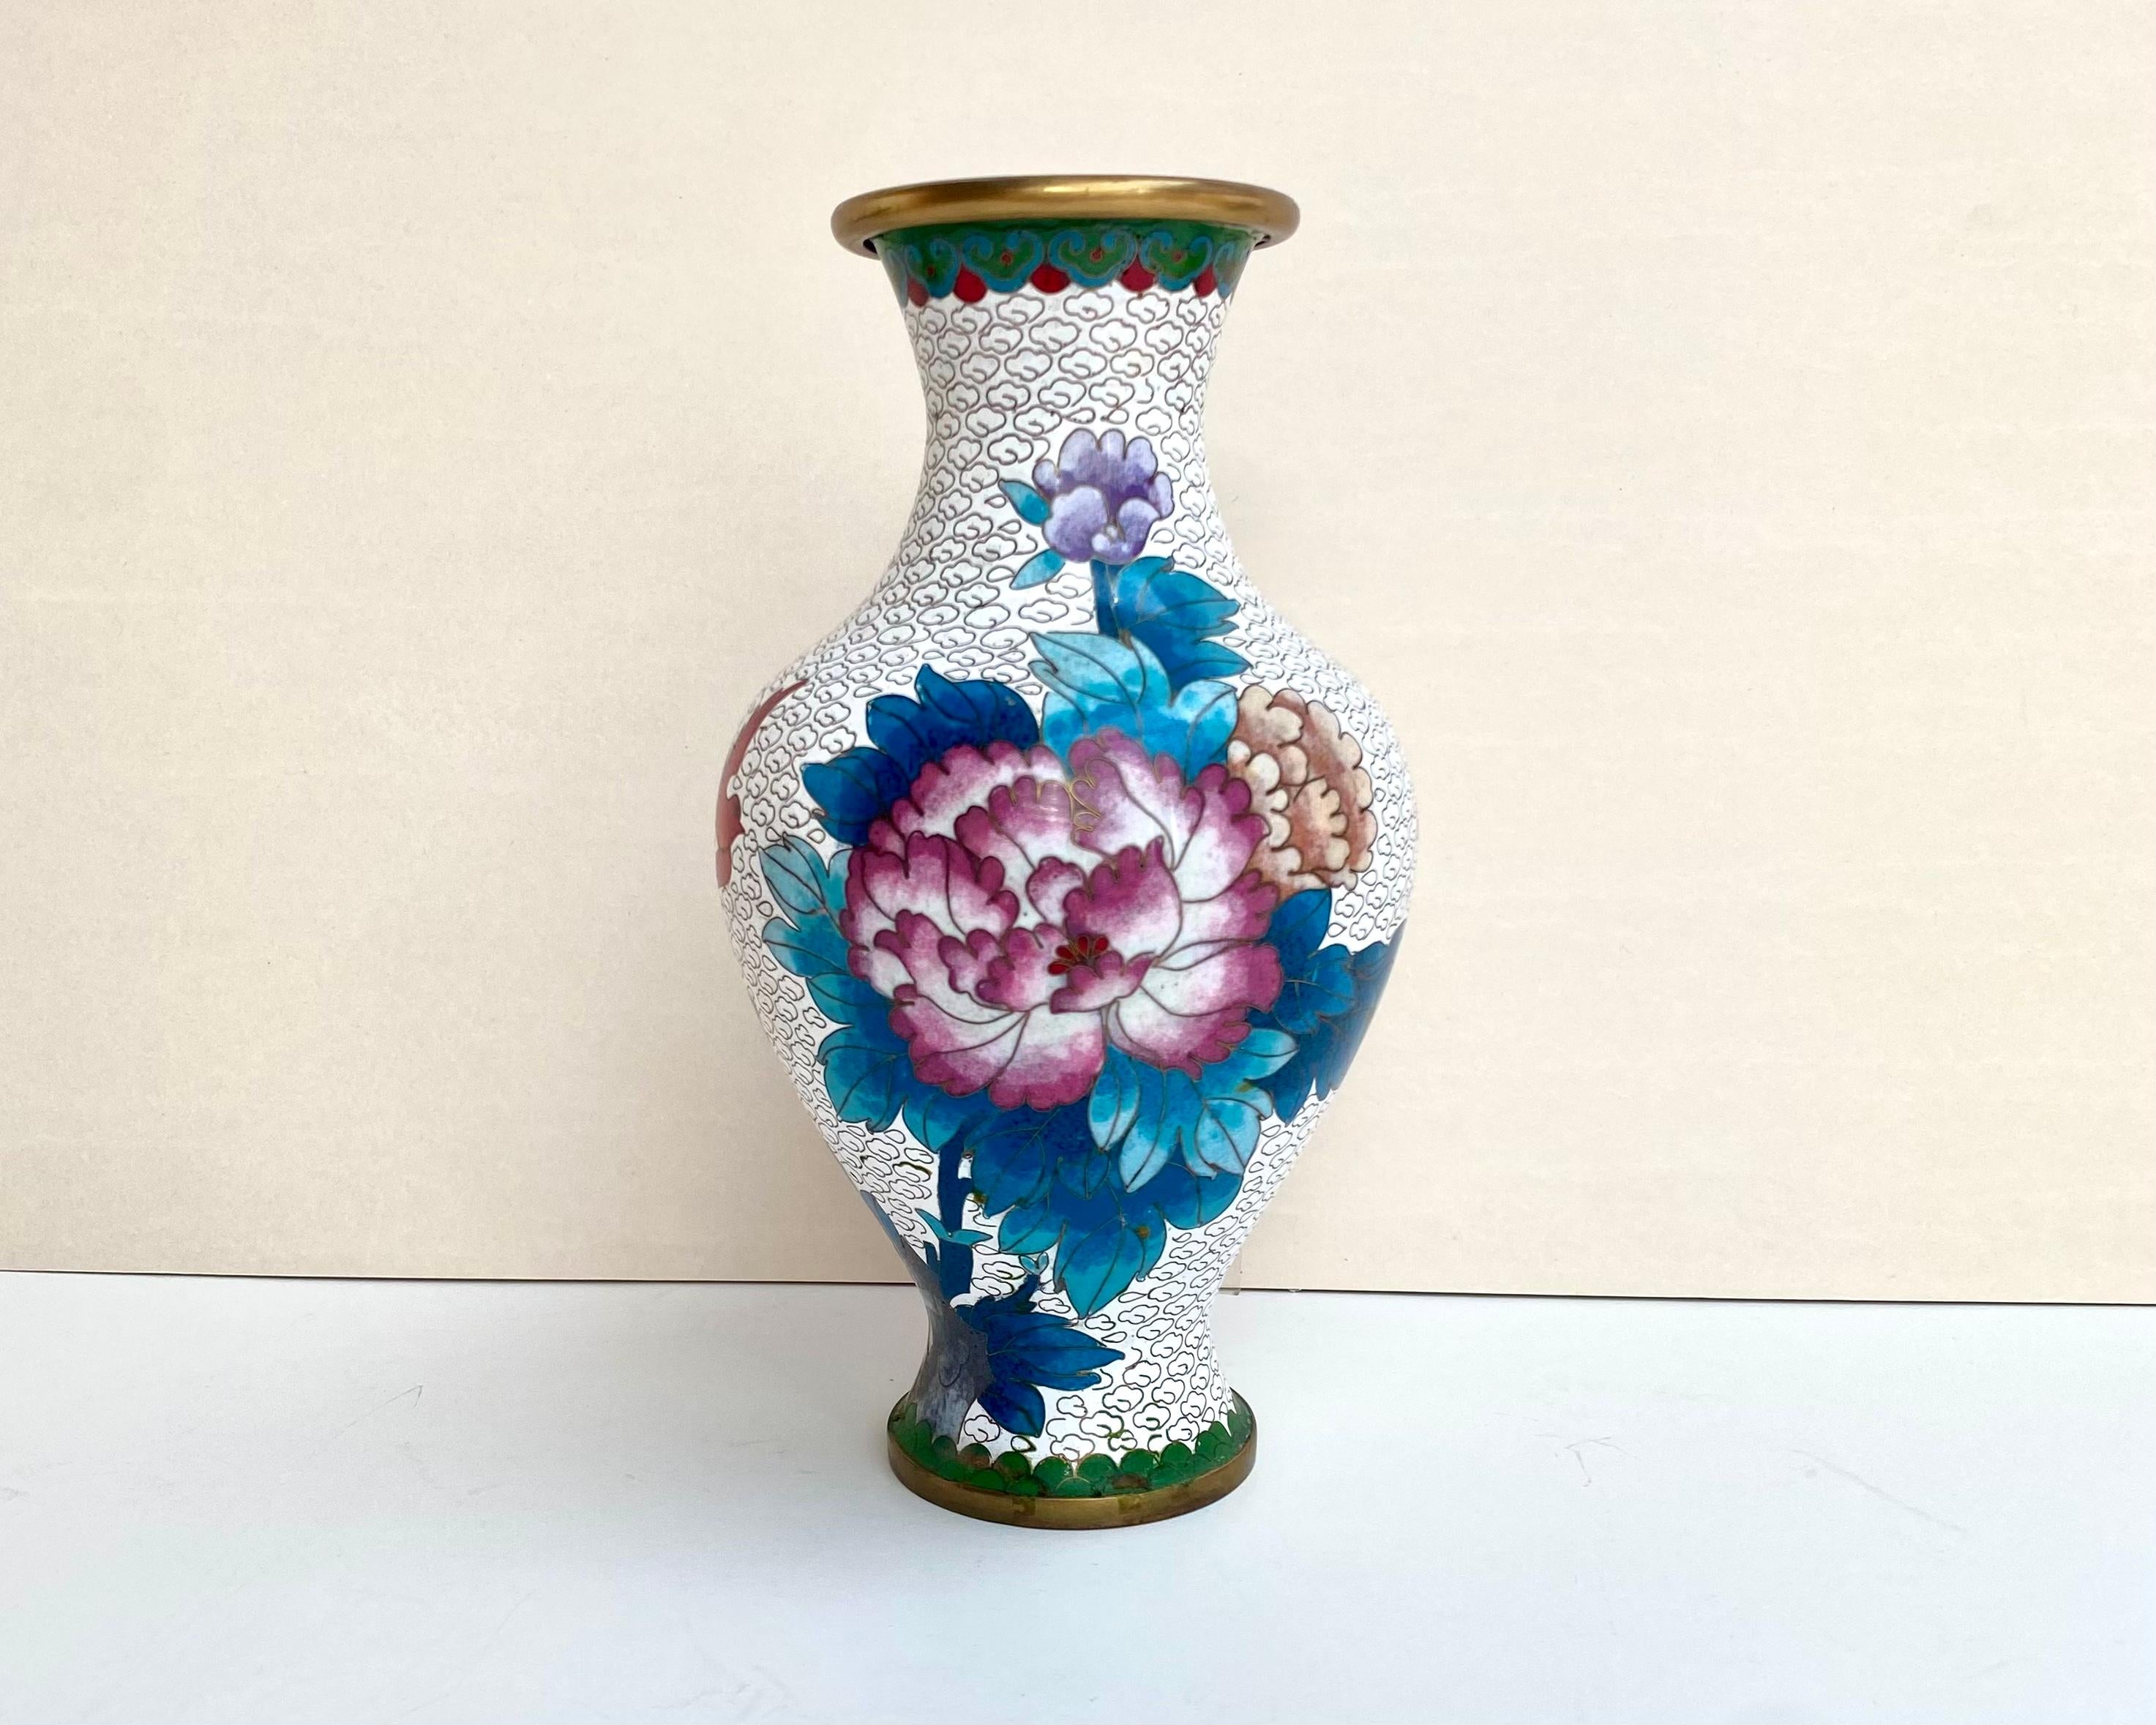 Vase chinois vintage en métal cloisonné multicolore décoré d'un motif de grandes fleurs sur fond blanc. 

Le bord et la base circulaire sont de couleur bronze. Ce vase cloisonné est fini en émail lisse. 

Le vase a été créé en Chine dans les